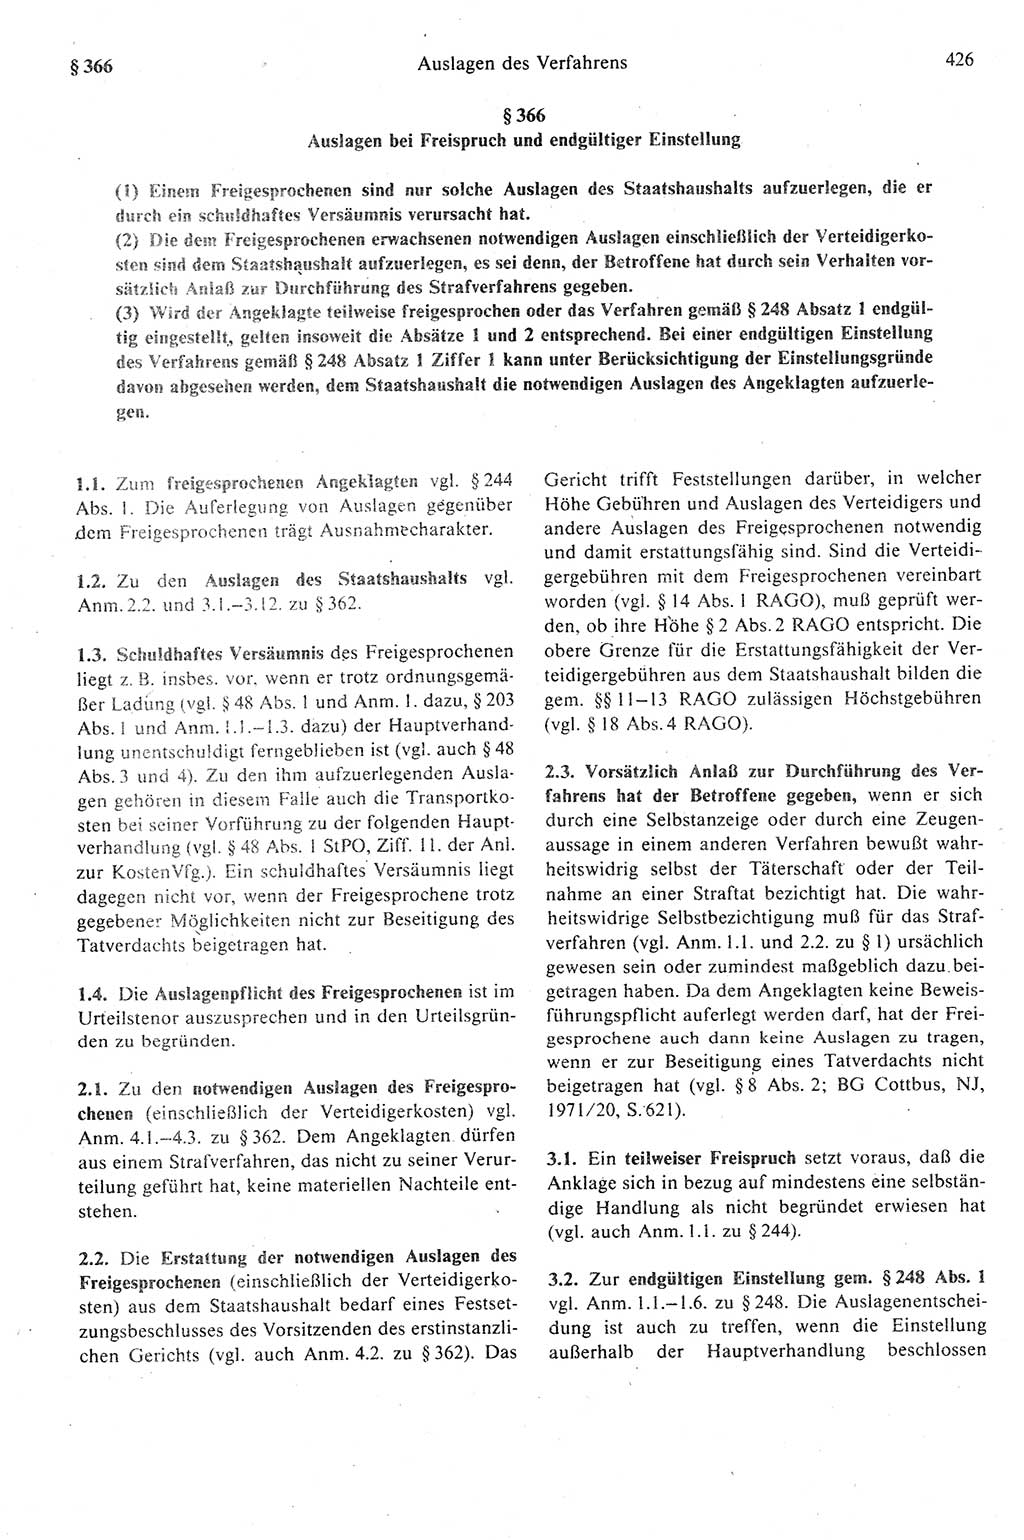 Strafprozeßrecht der DDR (Deutsche Demokratische Republik), Kommentar zur Strafprozeßordnung (StPO) 1989, Seite 426 (Strafprozeßr. DDR Komm. StPO 1989, S. 426)